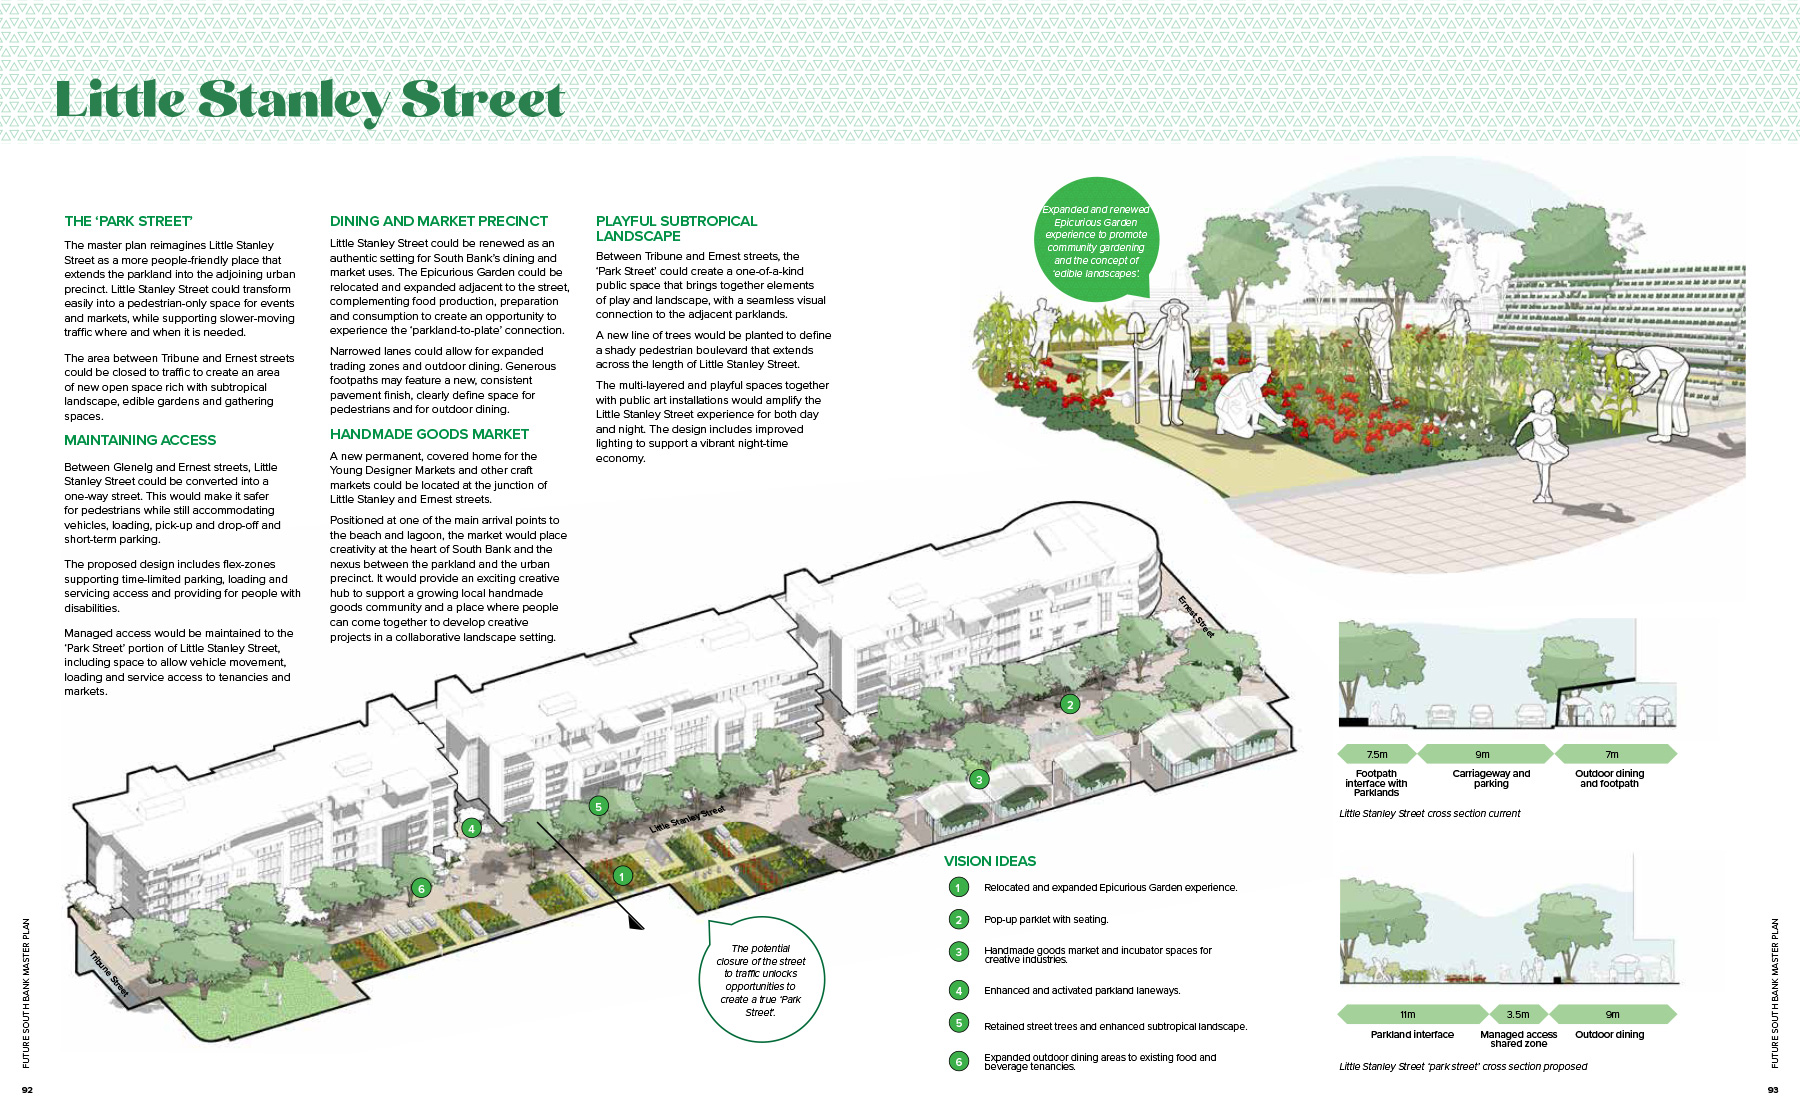 Little Stanley Street Plan Explained